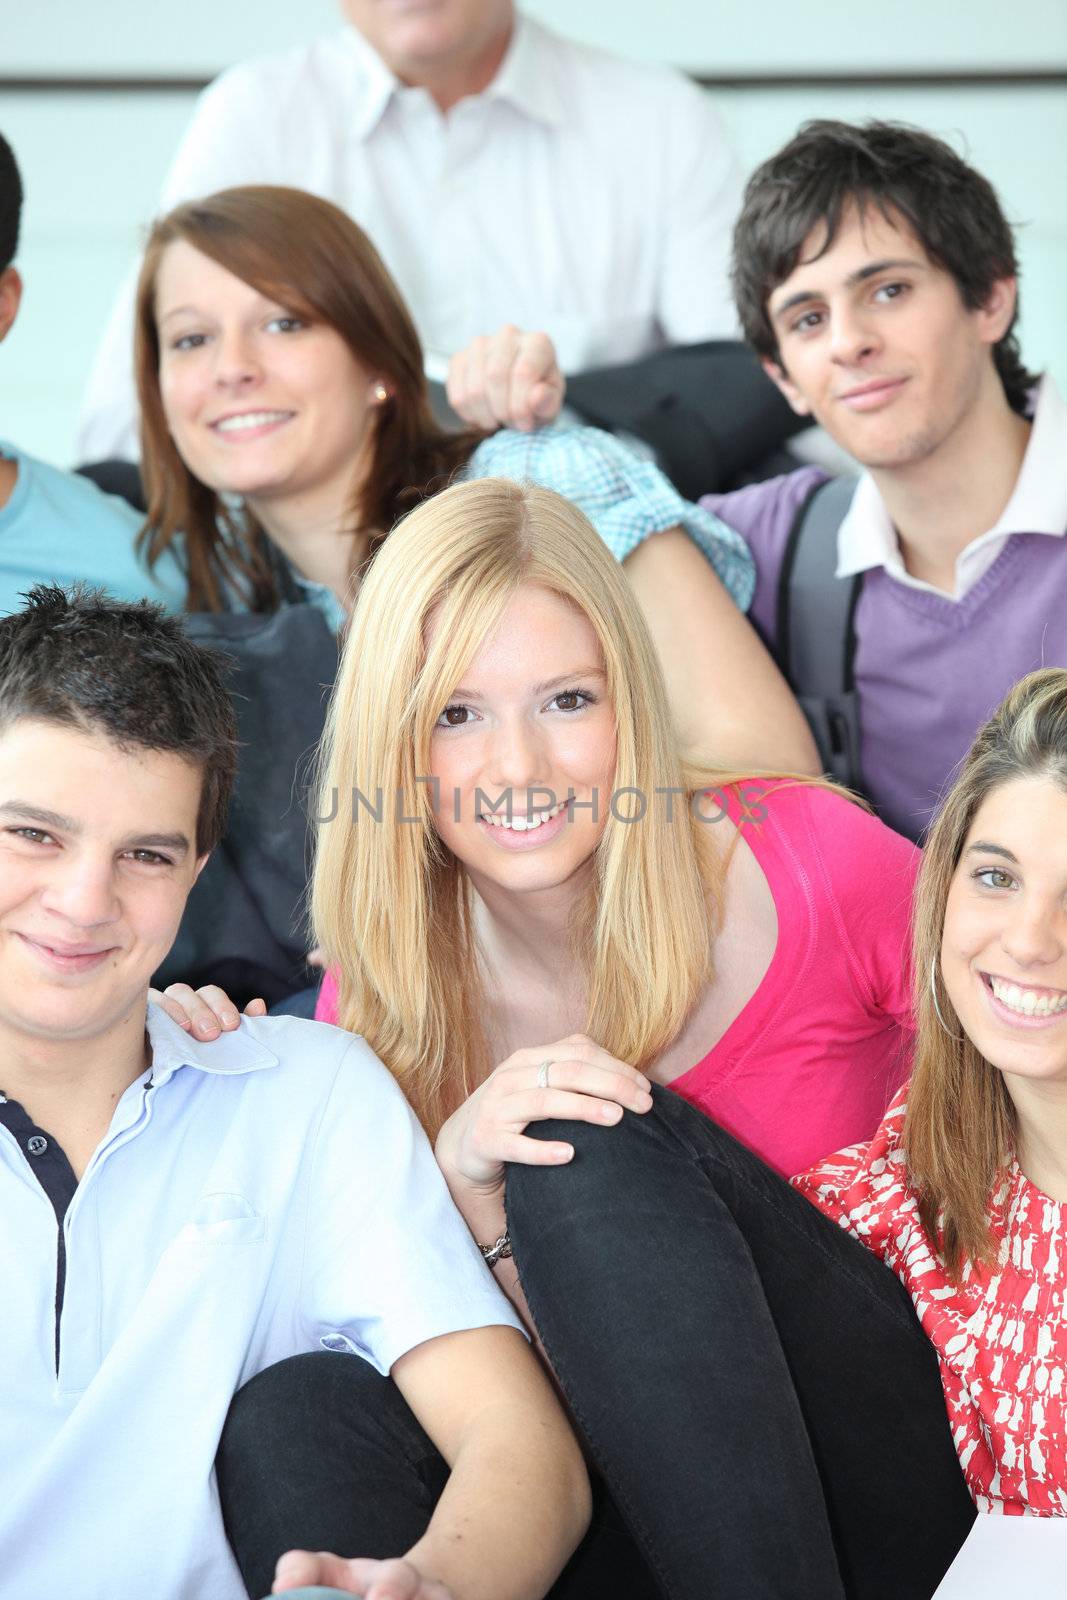 College classmates by phovoir